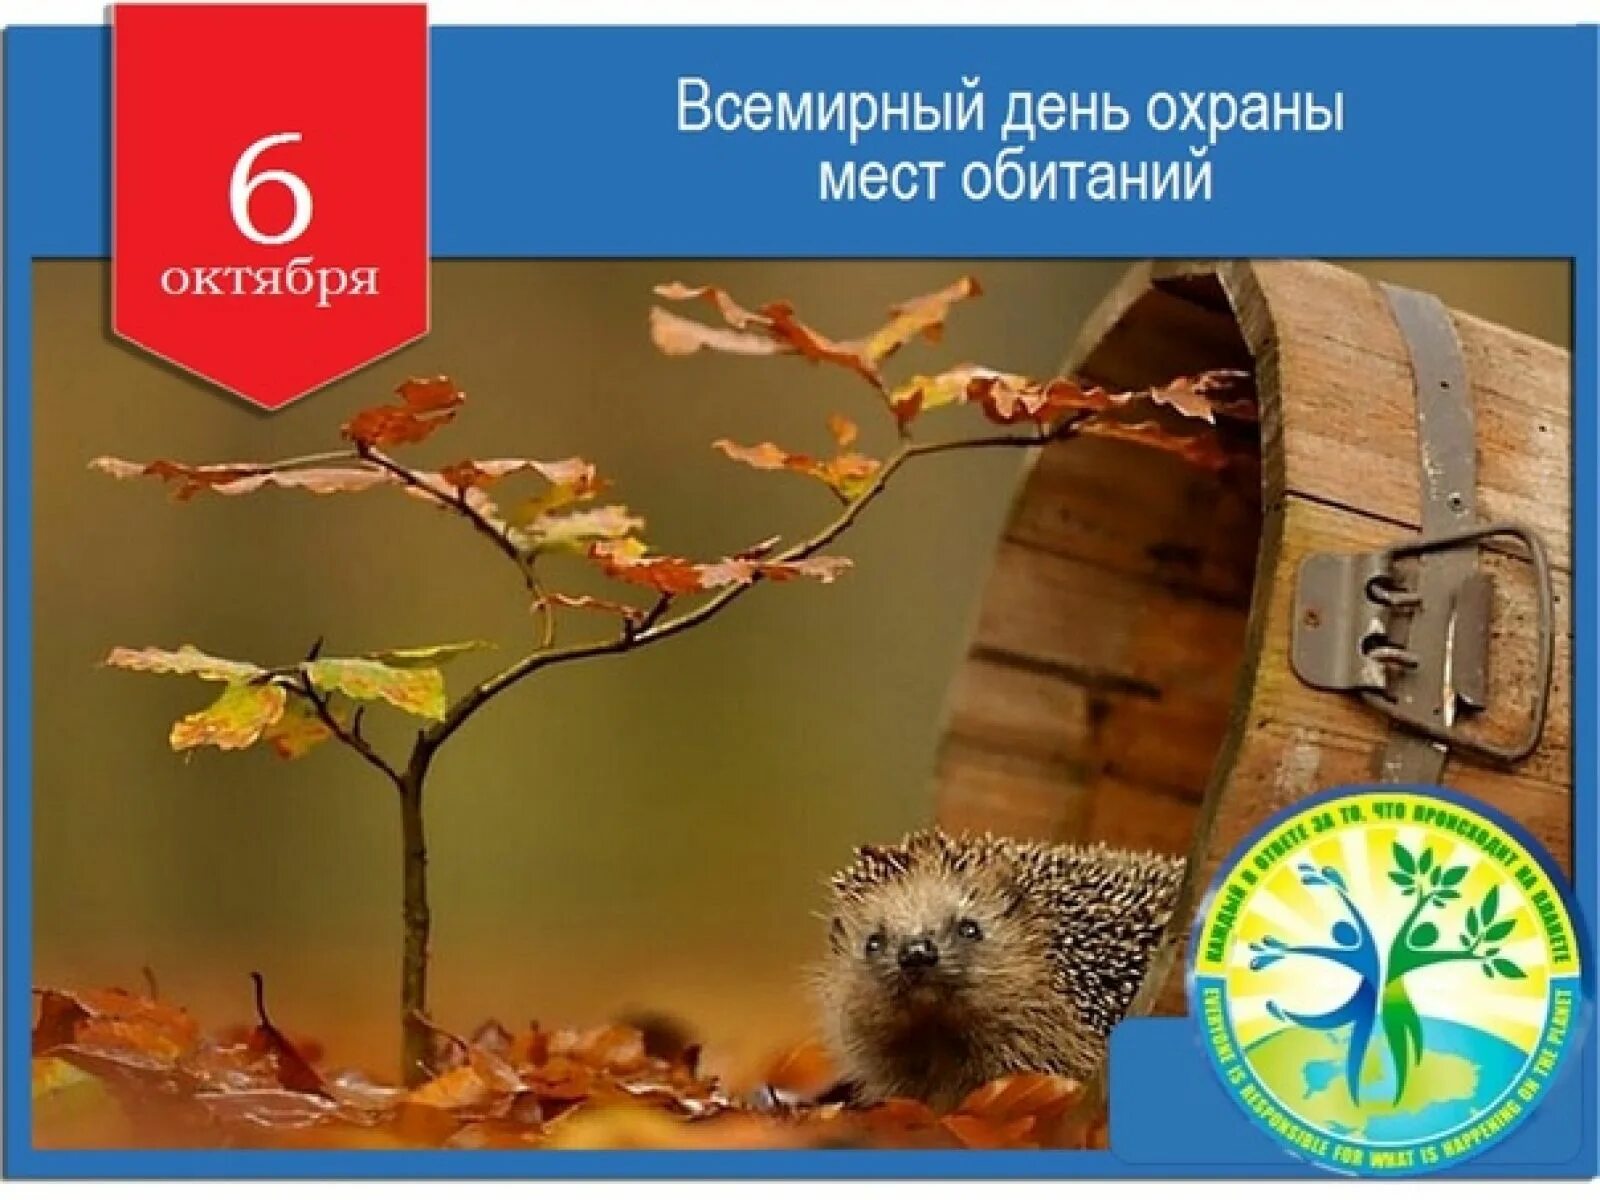 7 6 октябрь. 6 Октября Всемирный день охраны мест обитания. День охраны мест обитания 6 октября. День охраны среды обитания. Всемирный день охраны среды обитания.